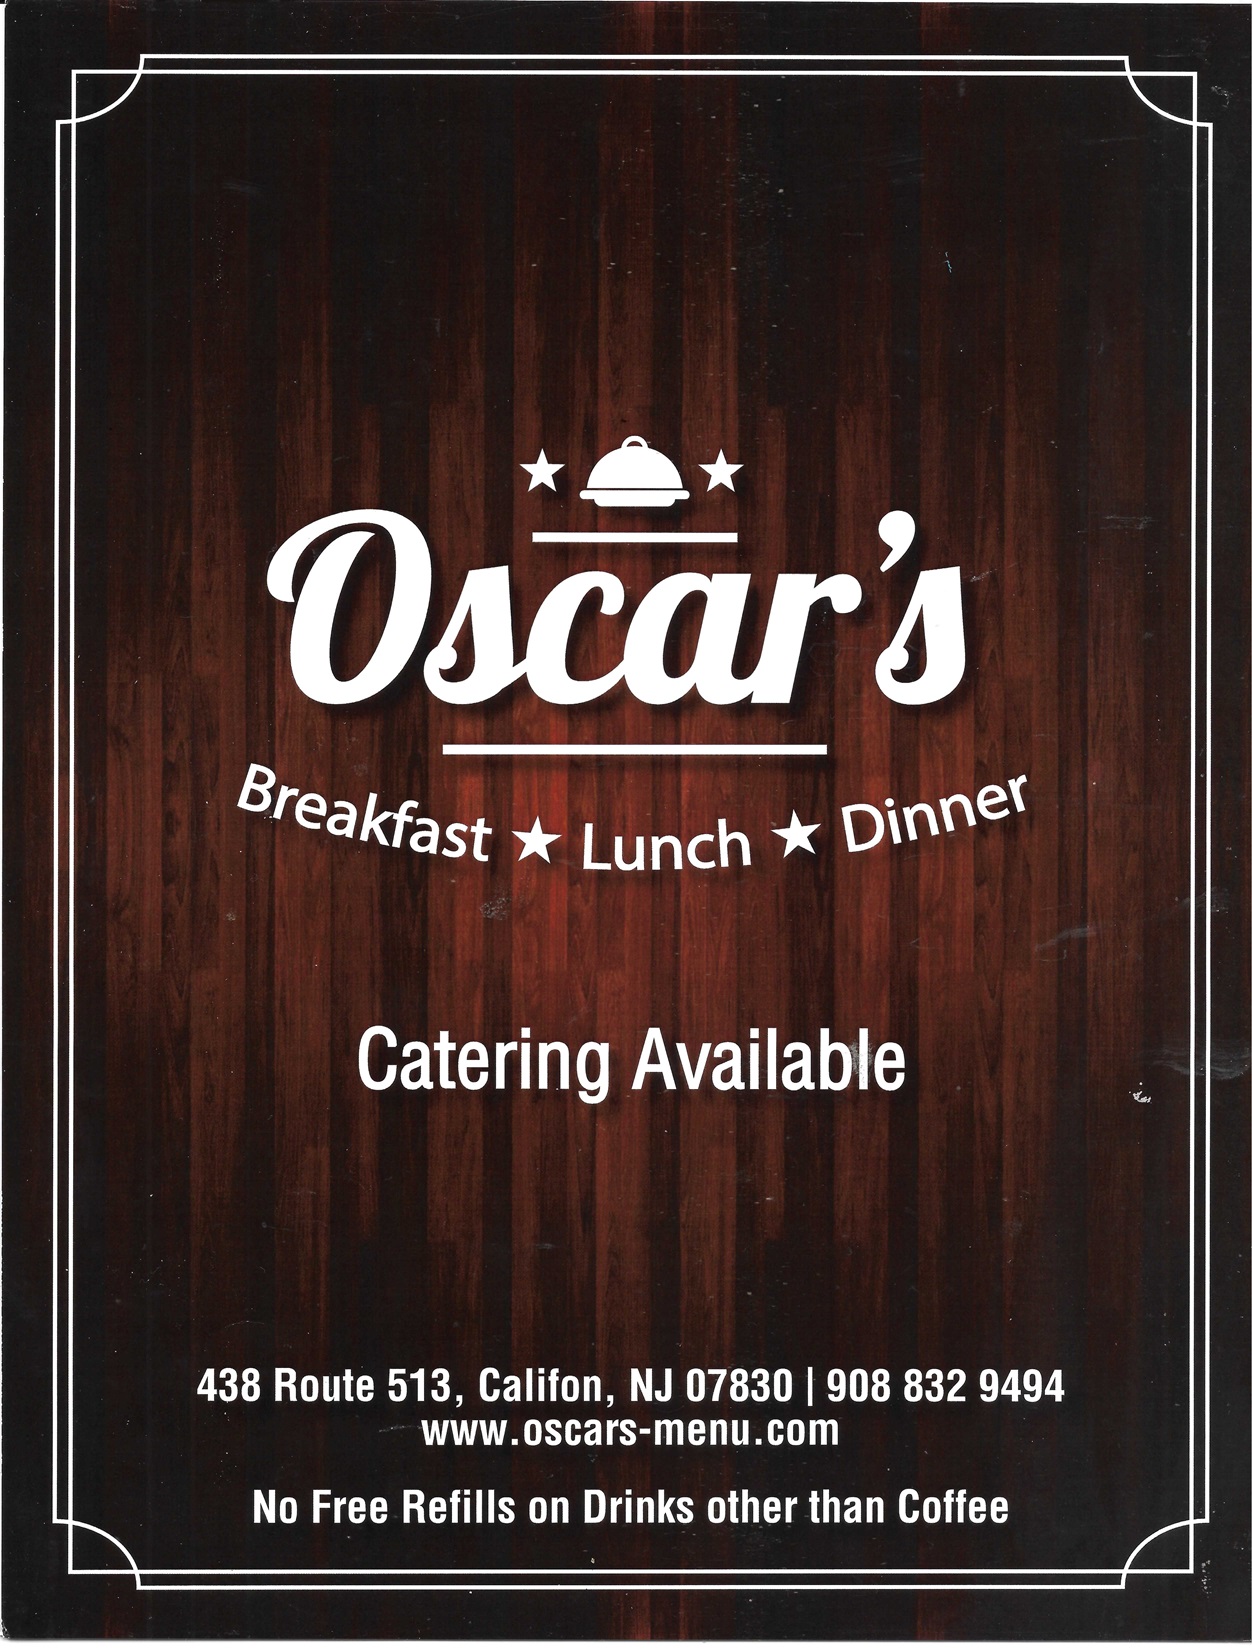 oscars breakfast page 1